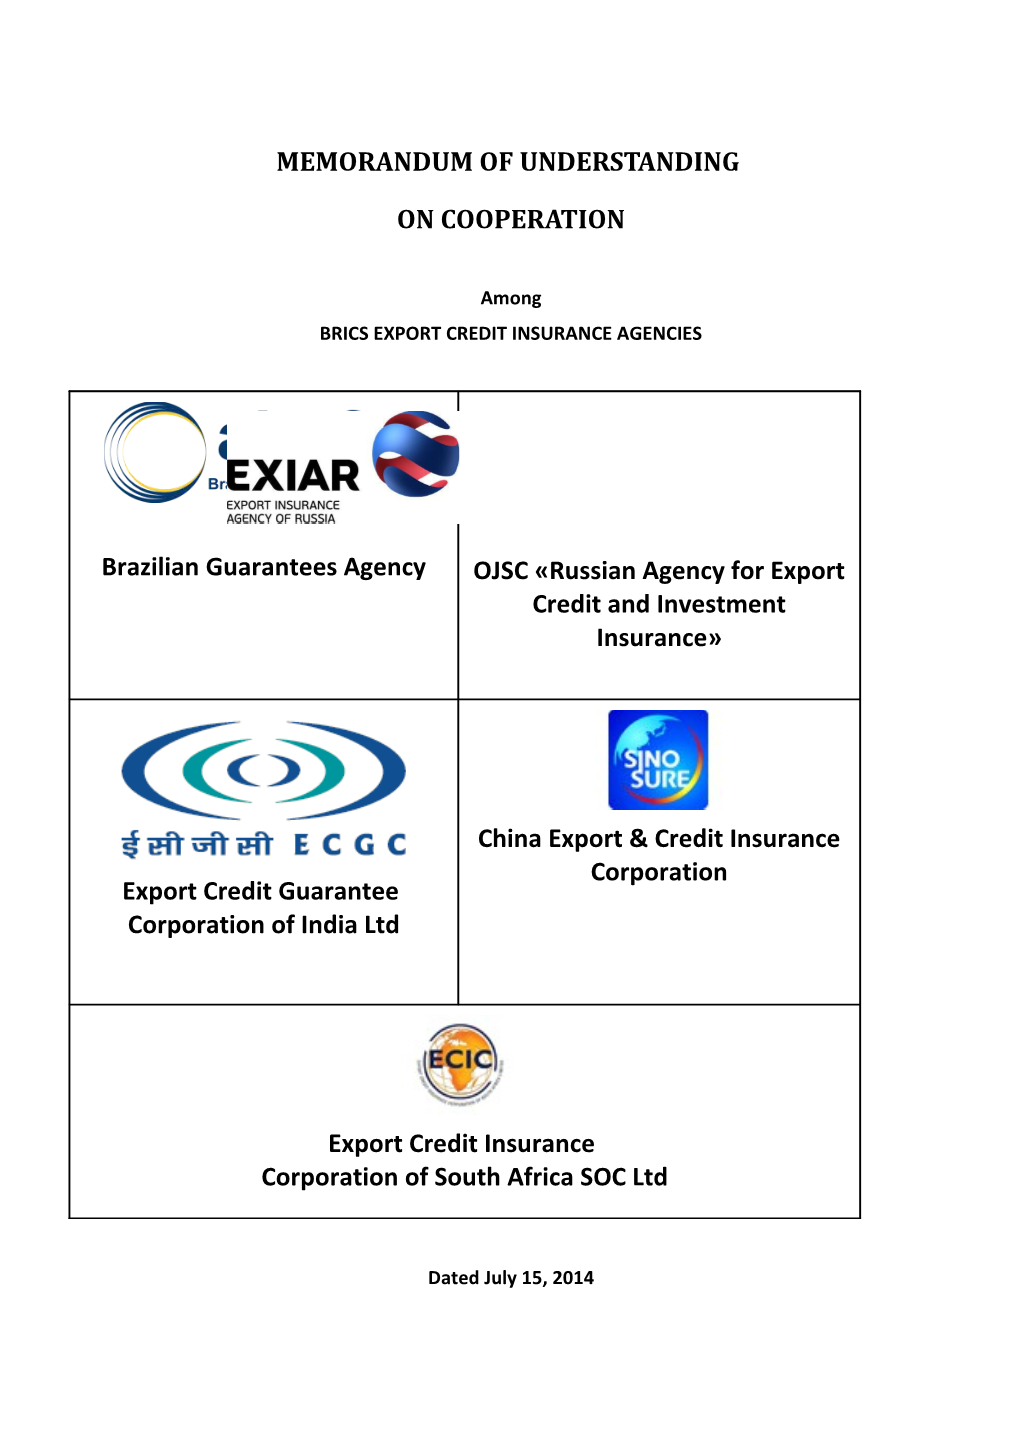 Brics Export Credit Insurance Agencies